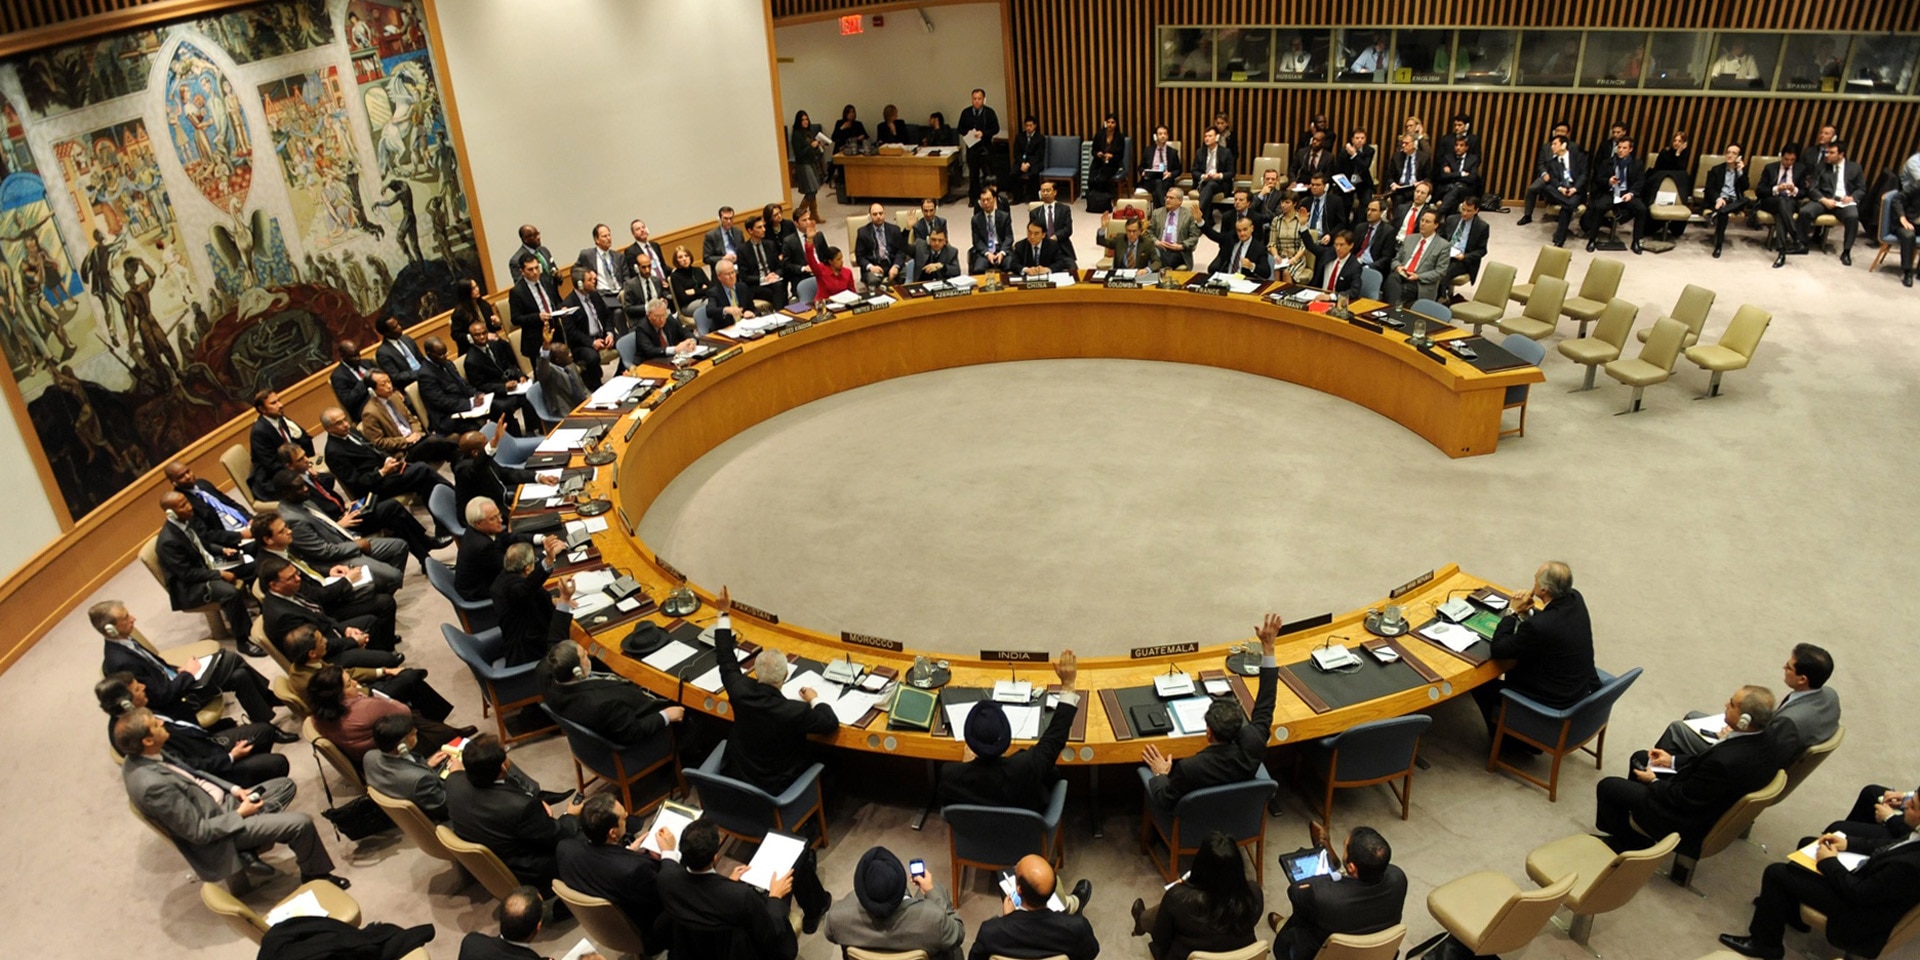 La votazione di una risoluzione del Consiglio di sicurezza delle Nazioni Unite da parte degli Stati membri.